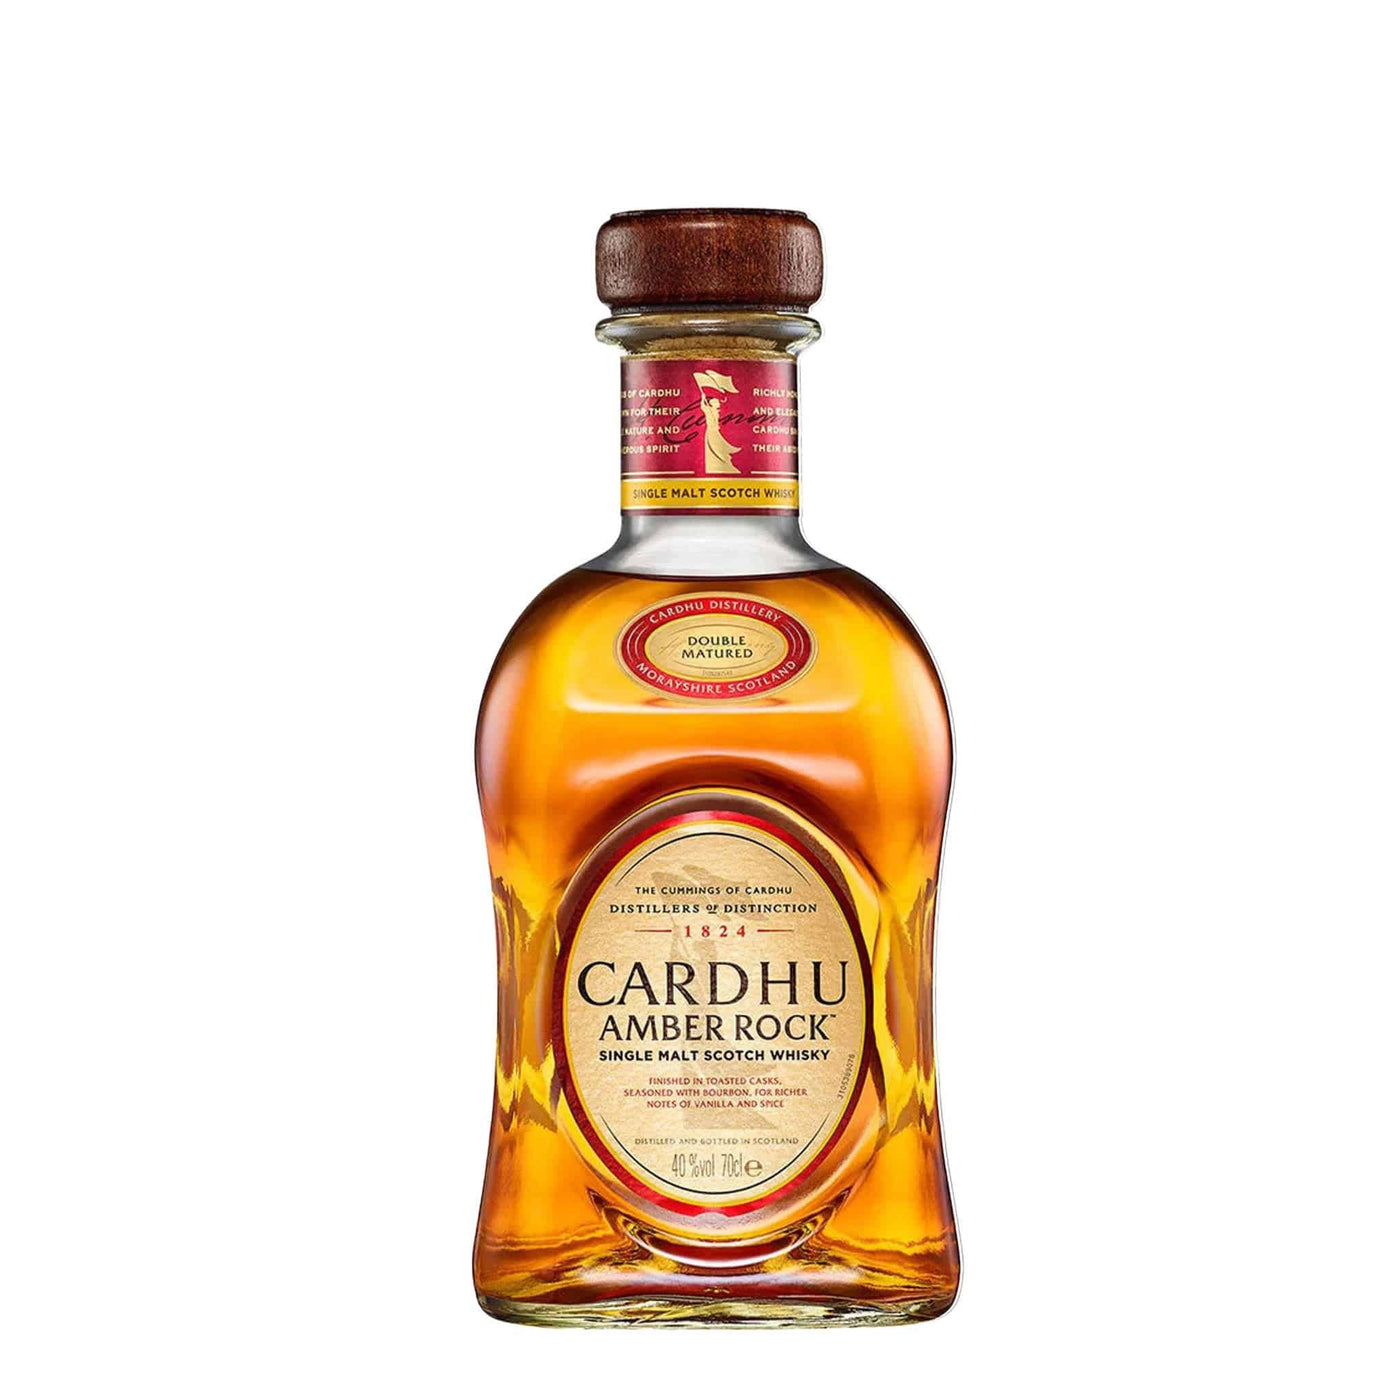 Cardhu Amber Rock Whisky - Spiritly